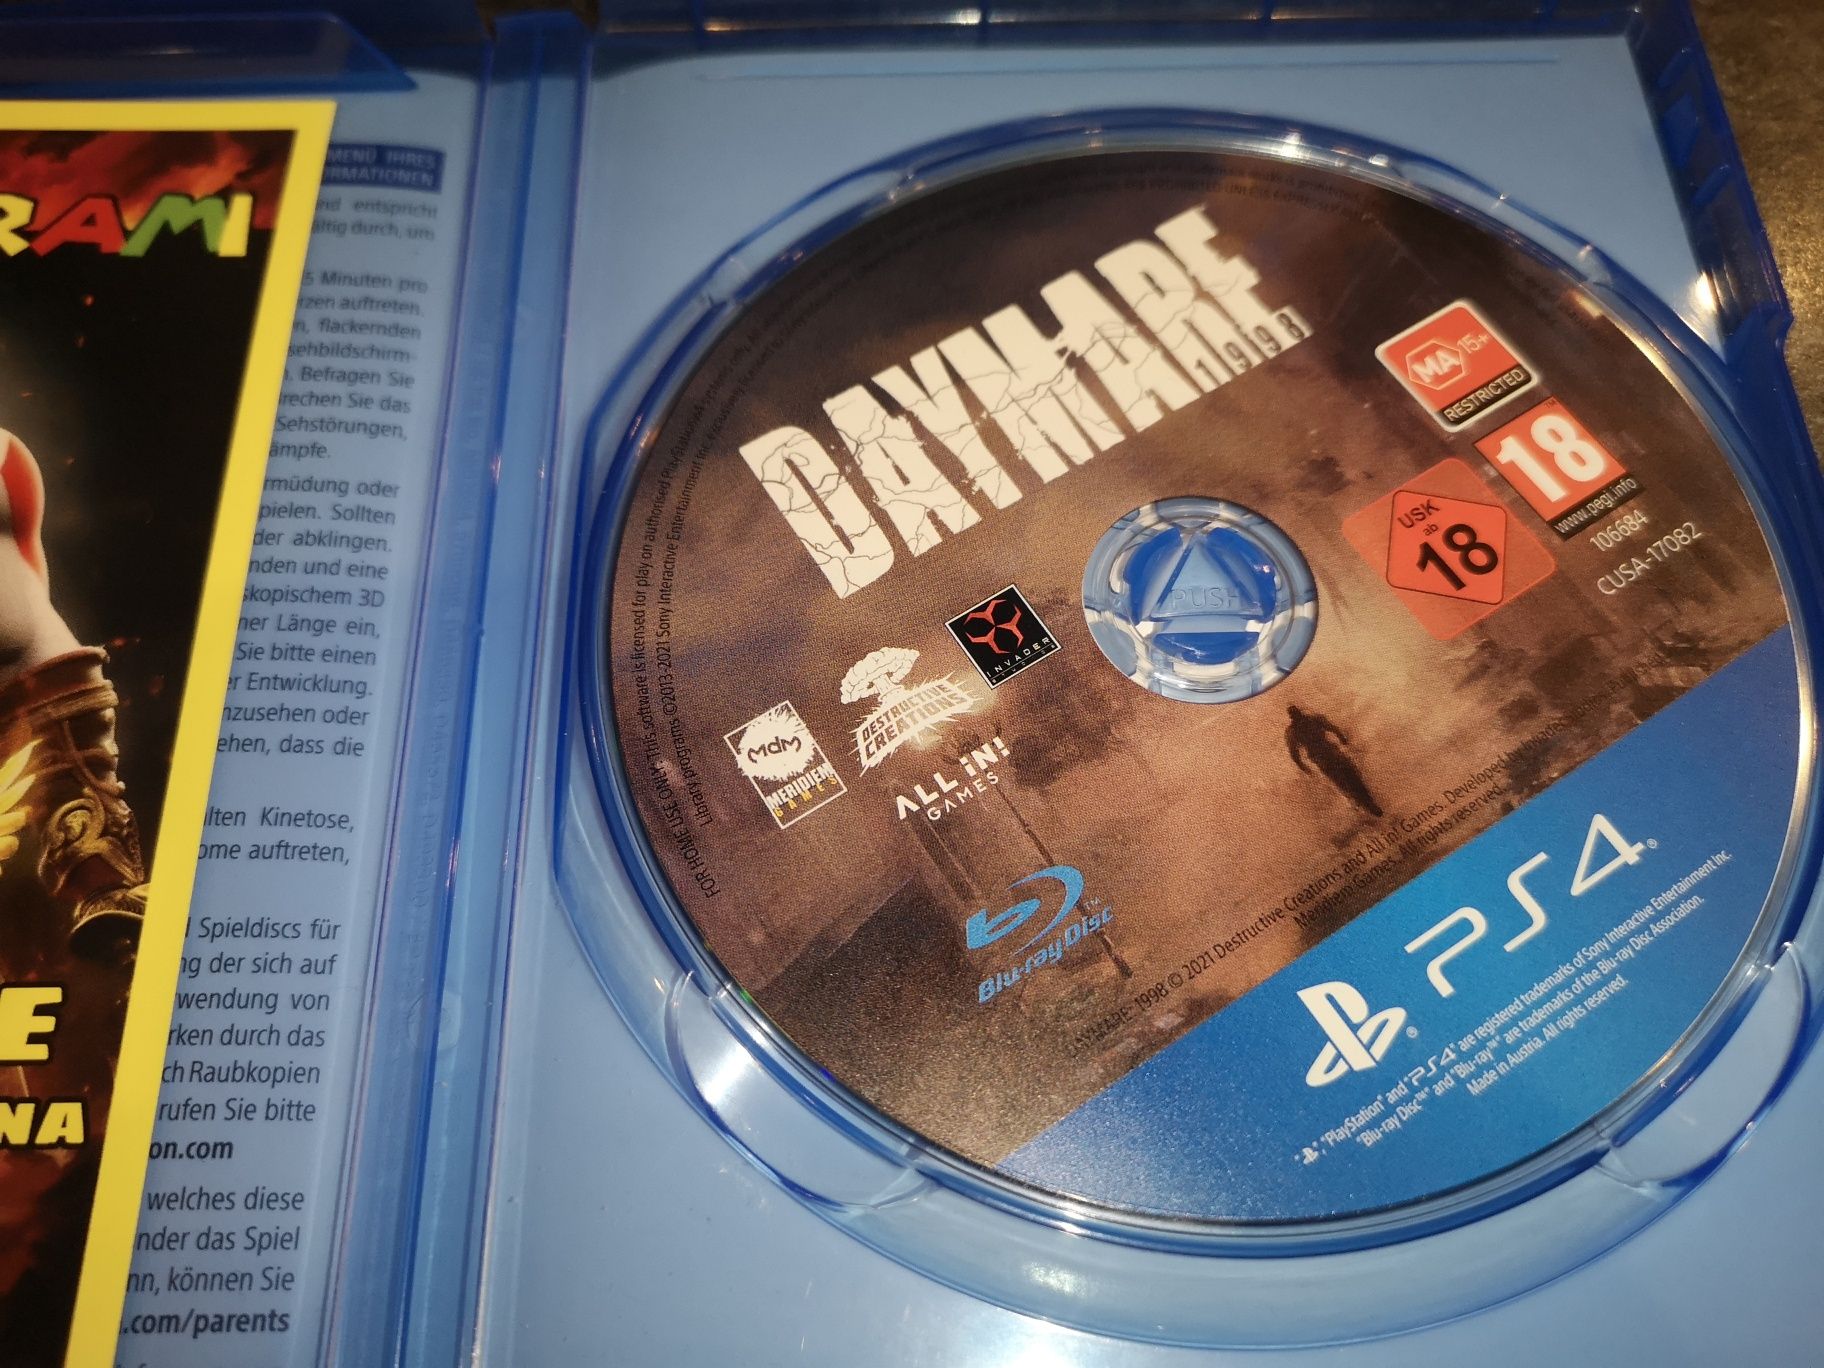 Daymare PS4 gra (możliwość wymiany) kioskzgrami Ursus